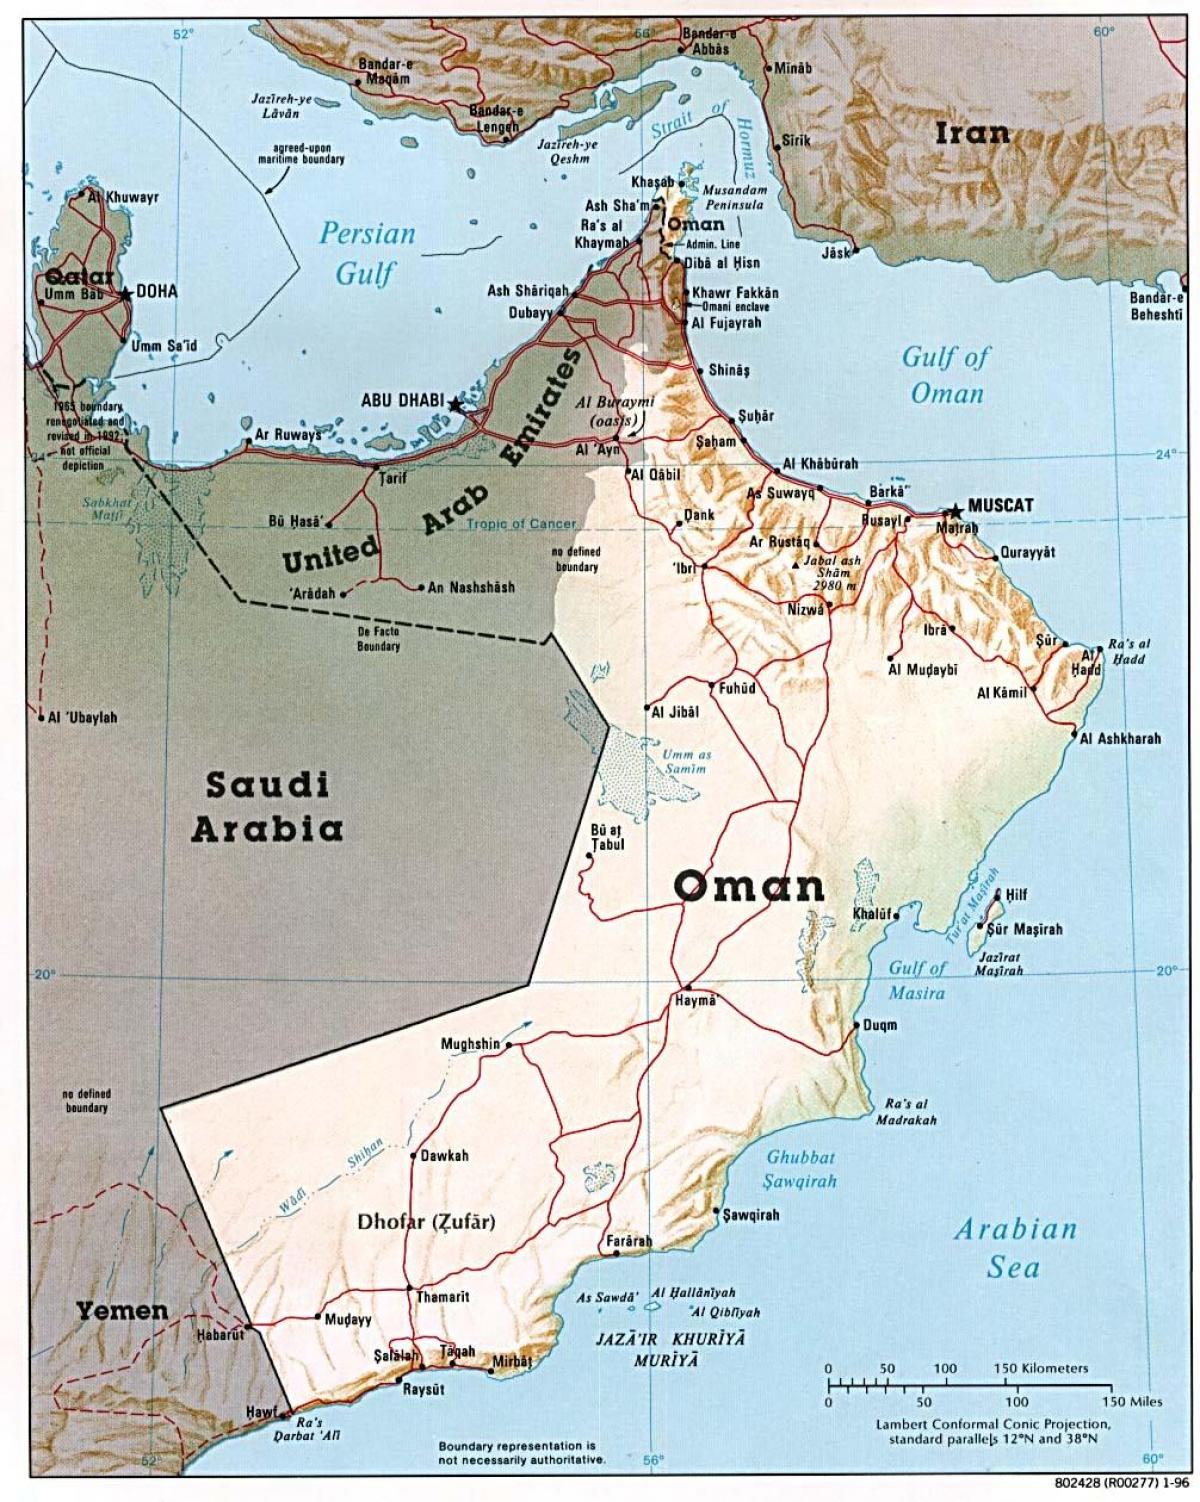 Oman kort með borgir